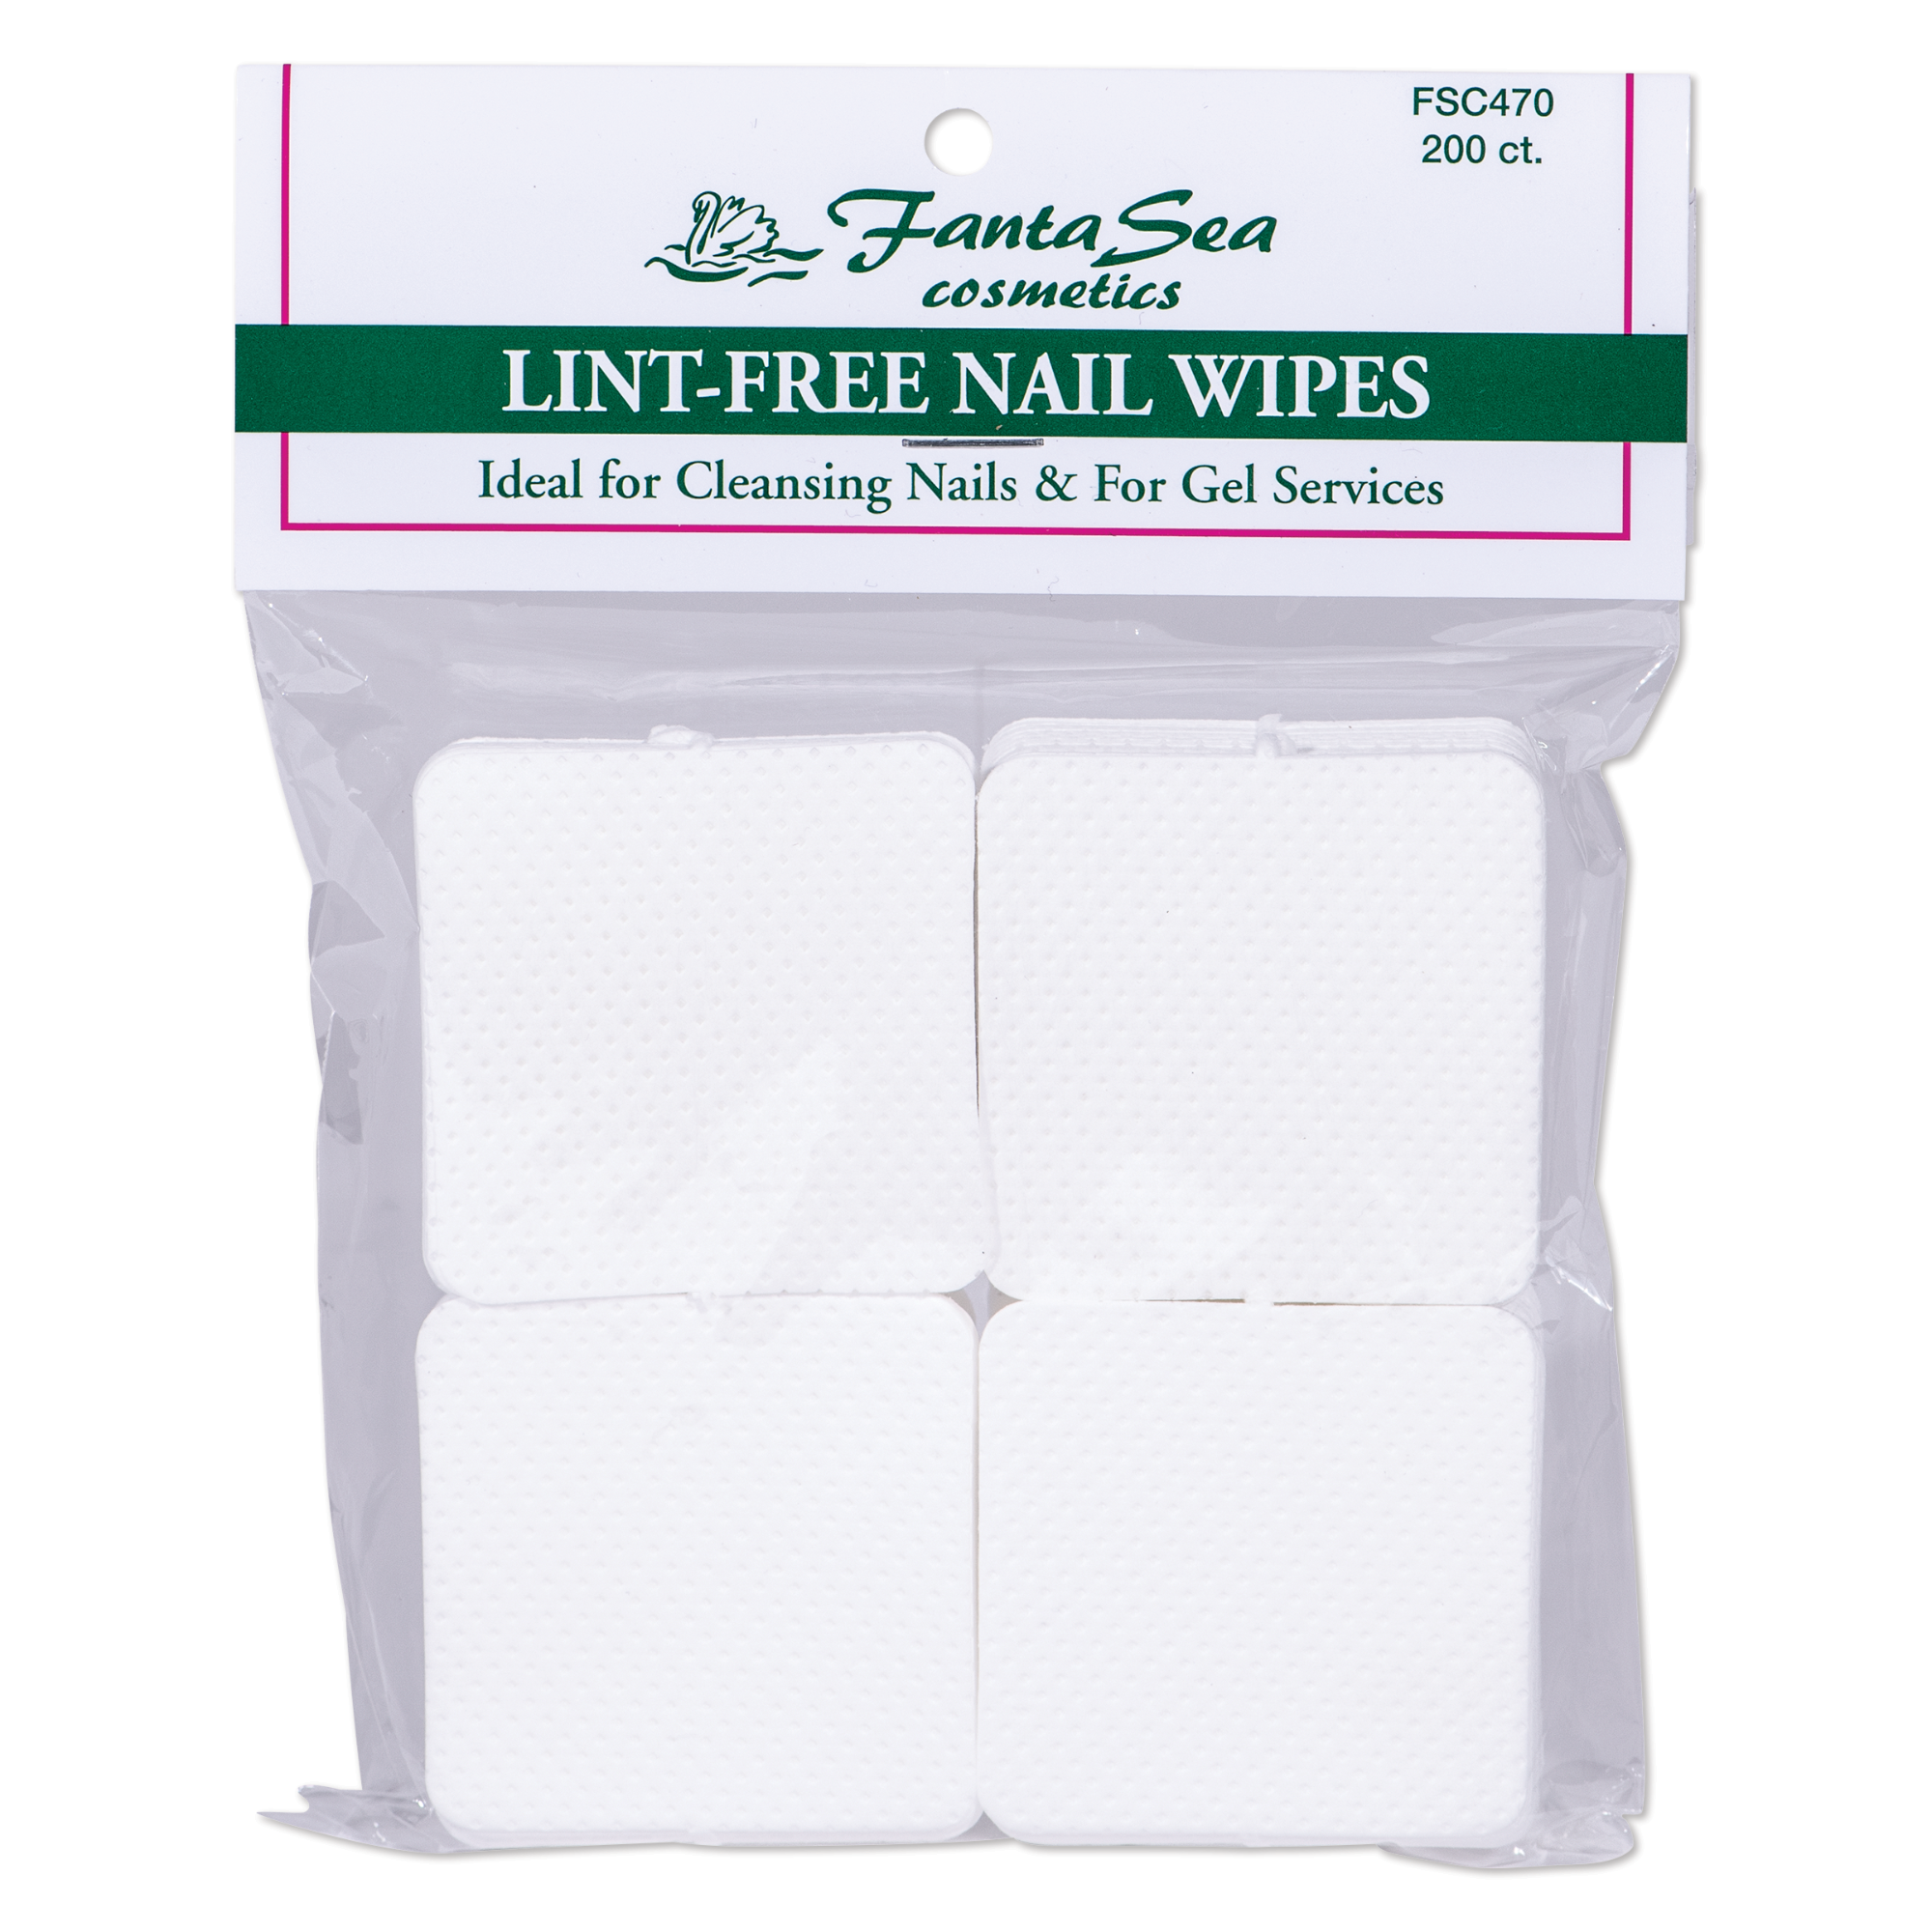 Nail Wipes, Lint-free - 2" x 2"